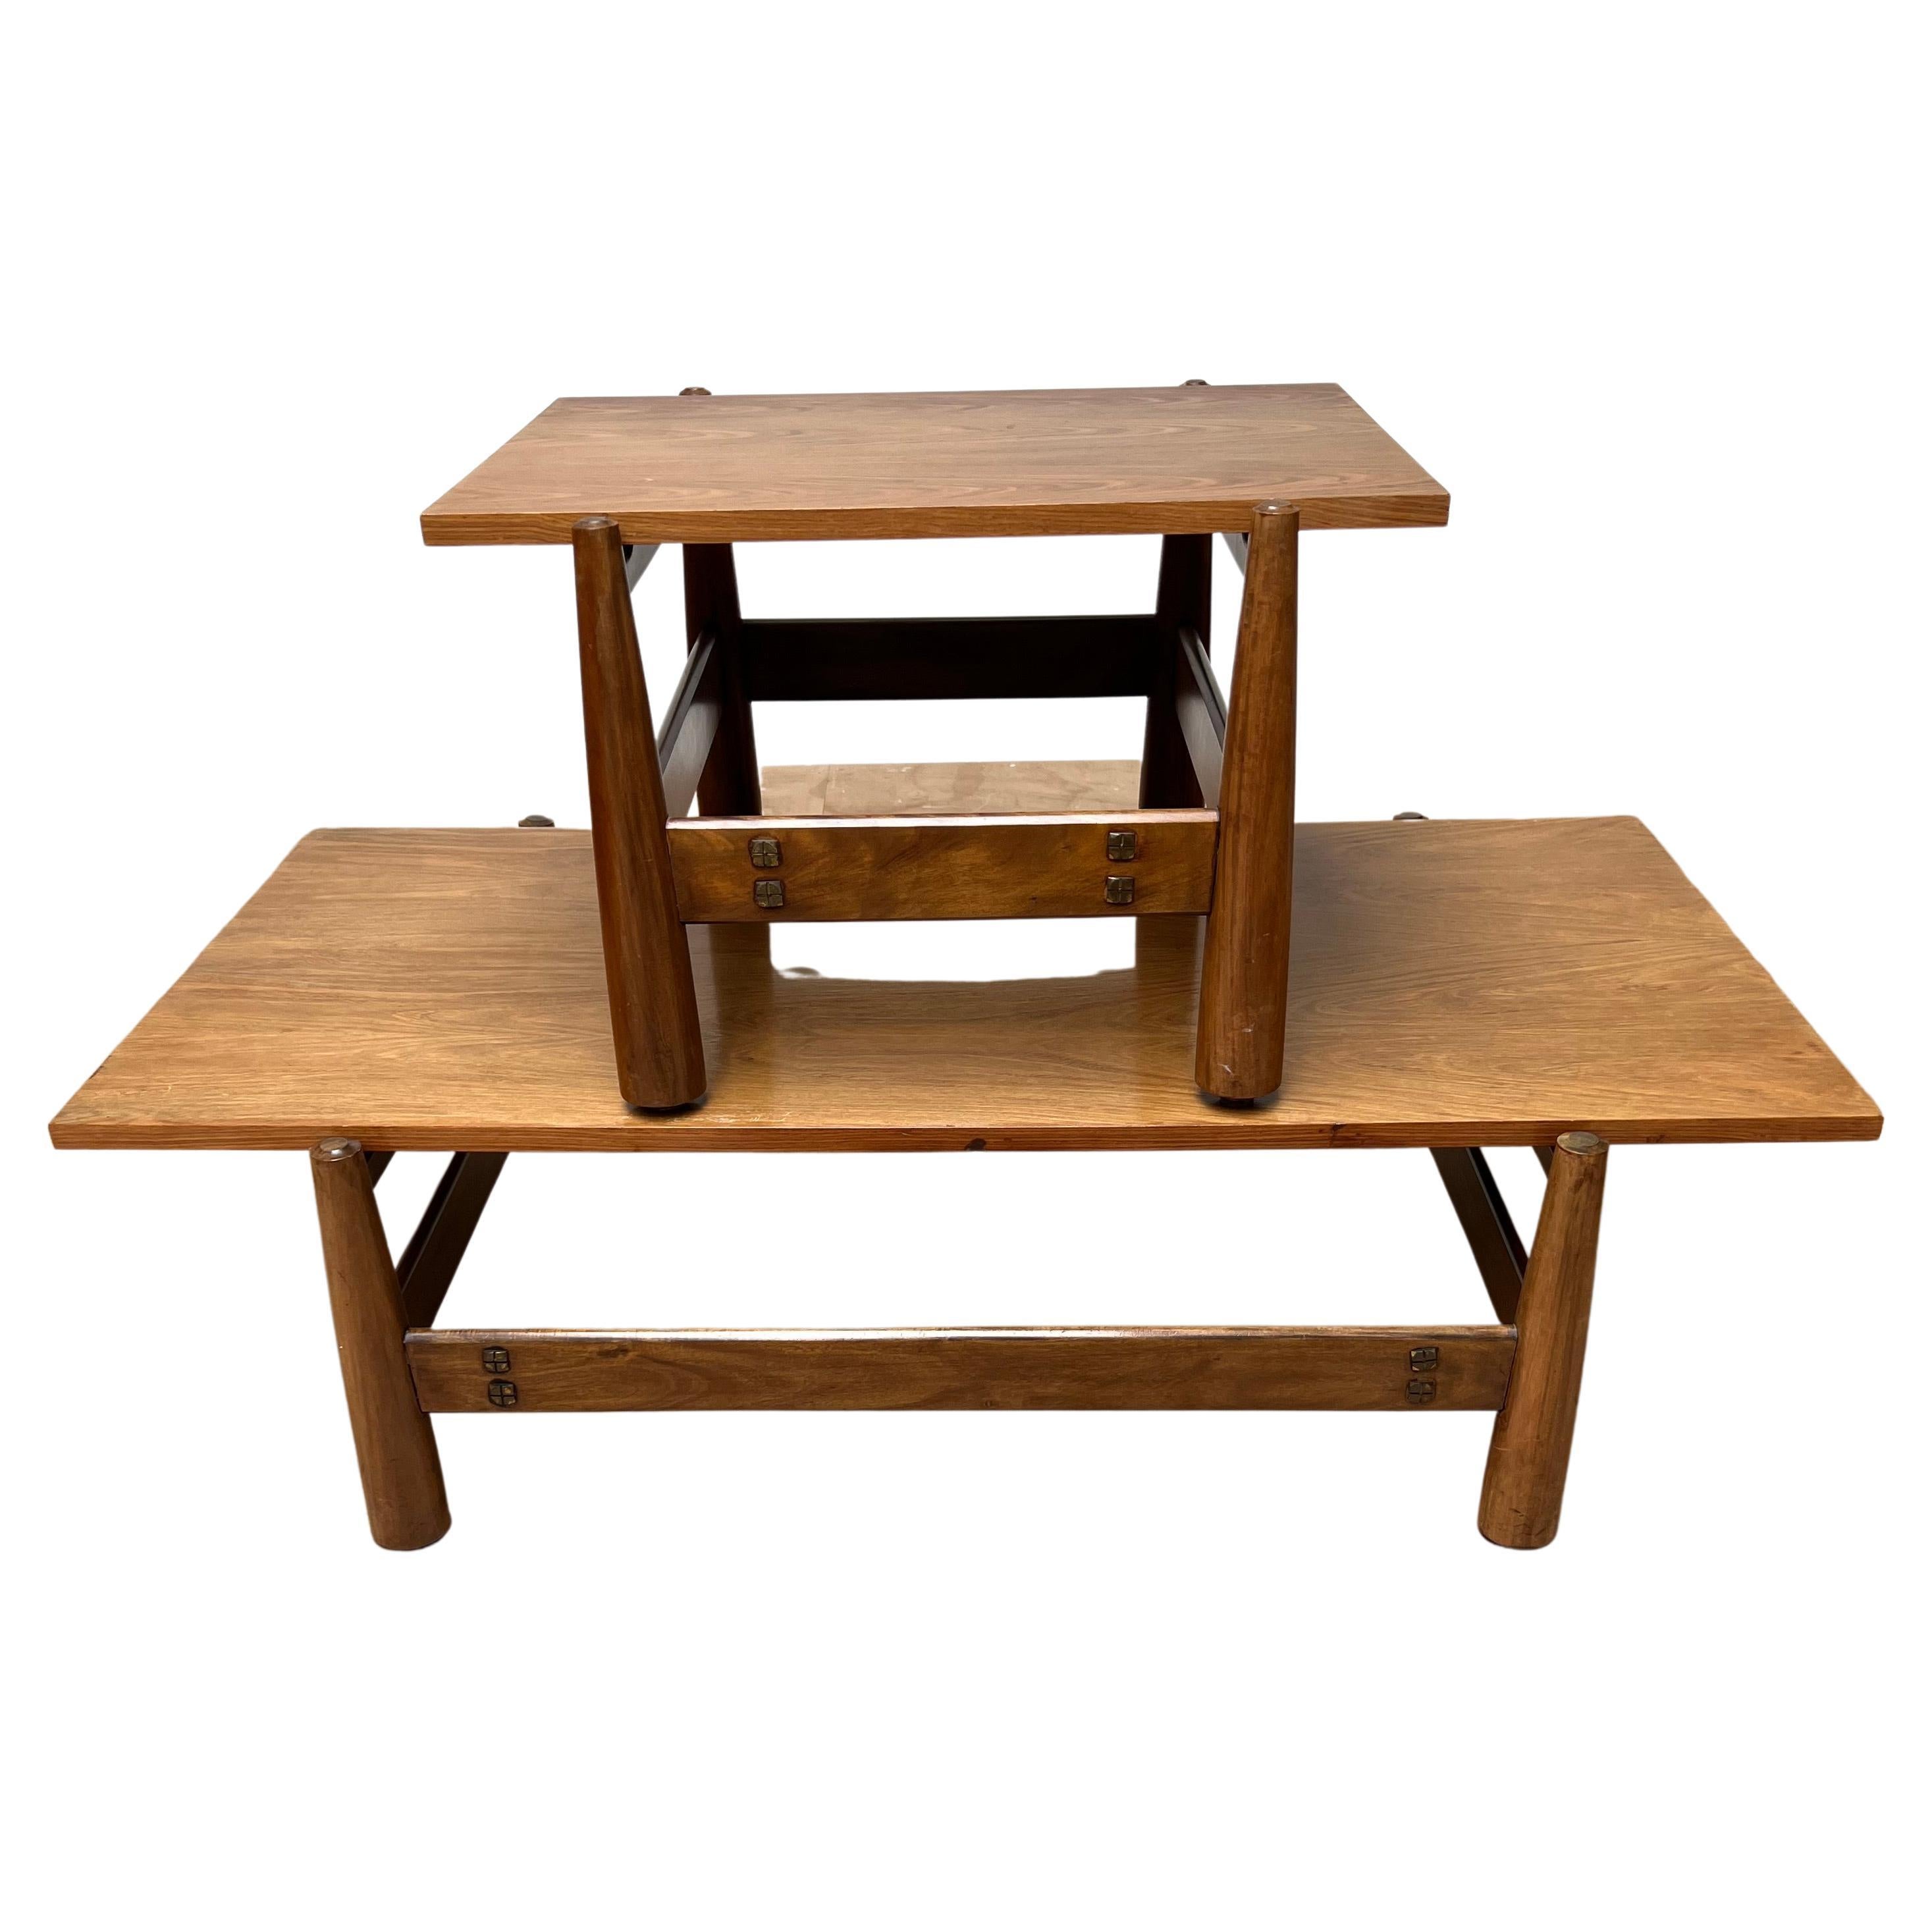 Seltener Satz von Tischen mit Vintage-Design von Móveis Cimo.

Diese äußerst stilvollen und begehrten Tische wurden in den 1960er Jahren von dem brasilianischen Unternehmen Móveis Cimo hergestellt, einem Pionier der brasilianischen